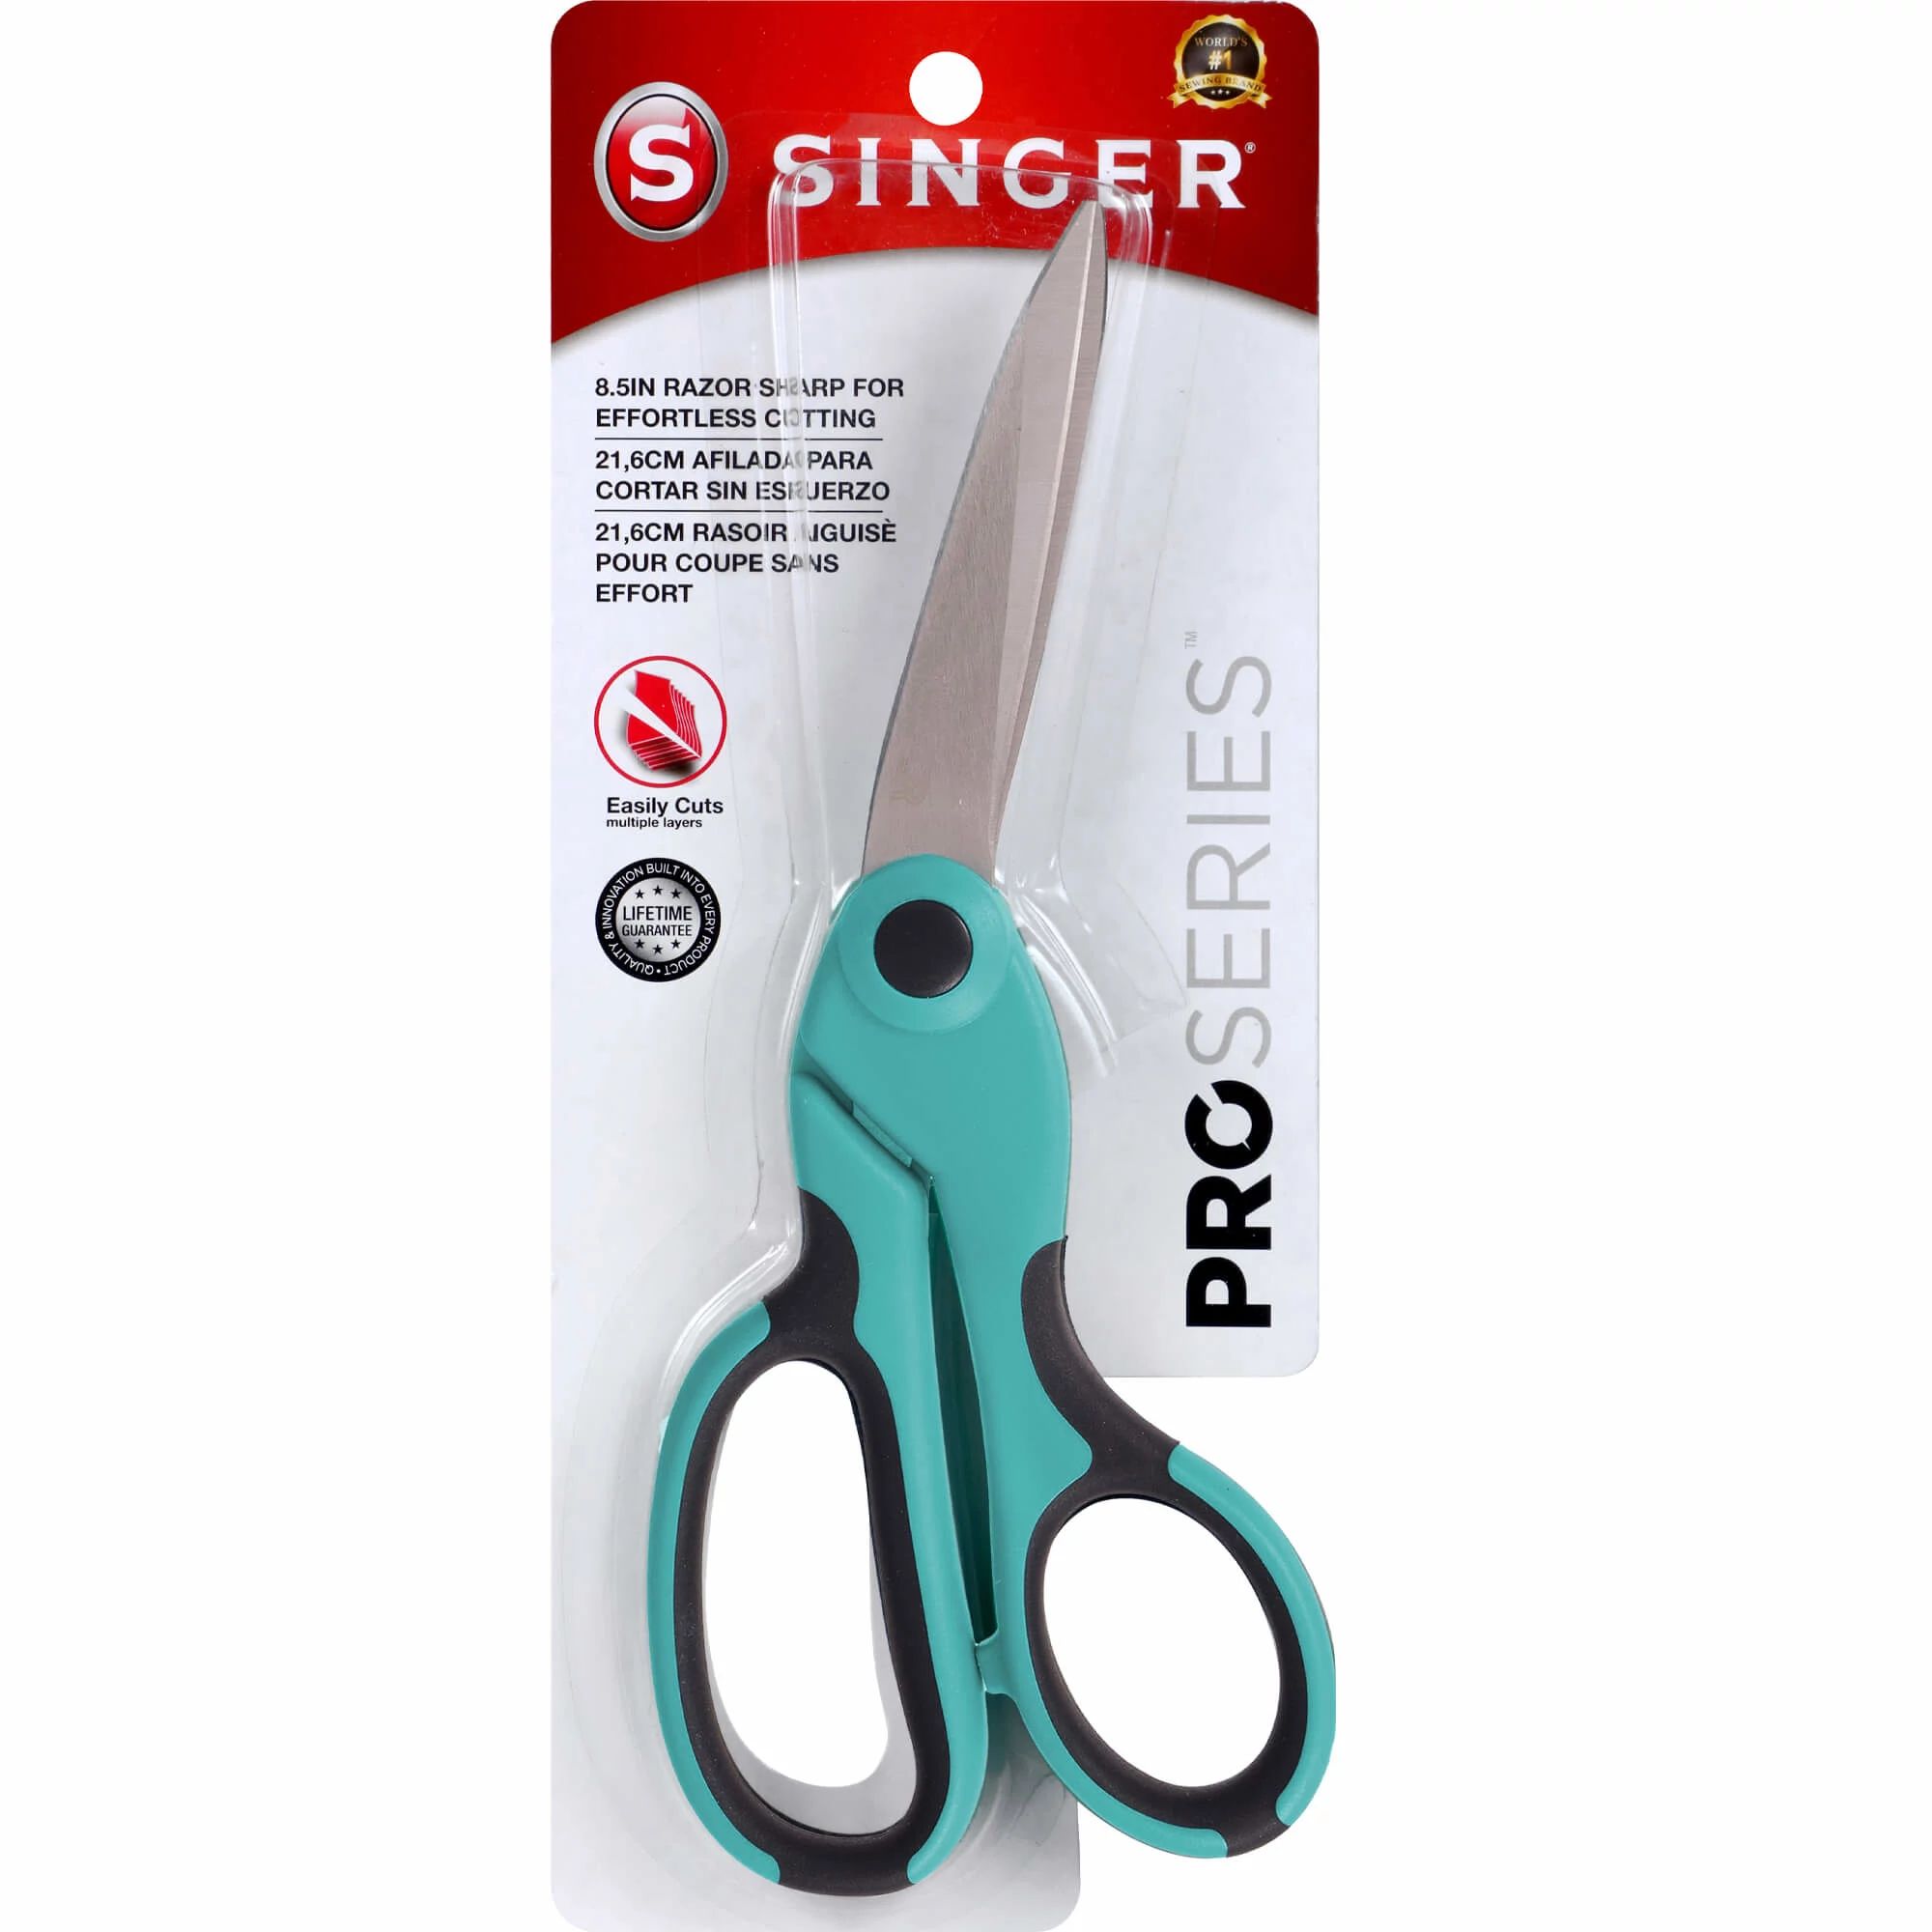 SINGER 8.5 ProSeries™ Scissors